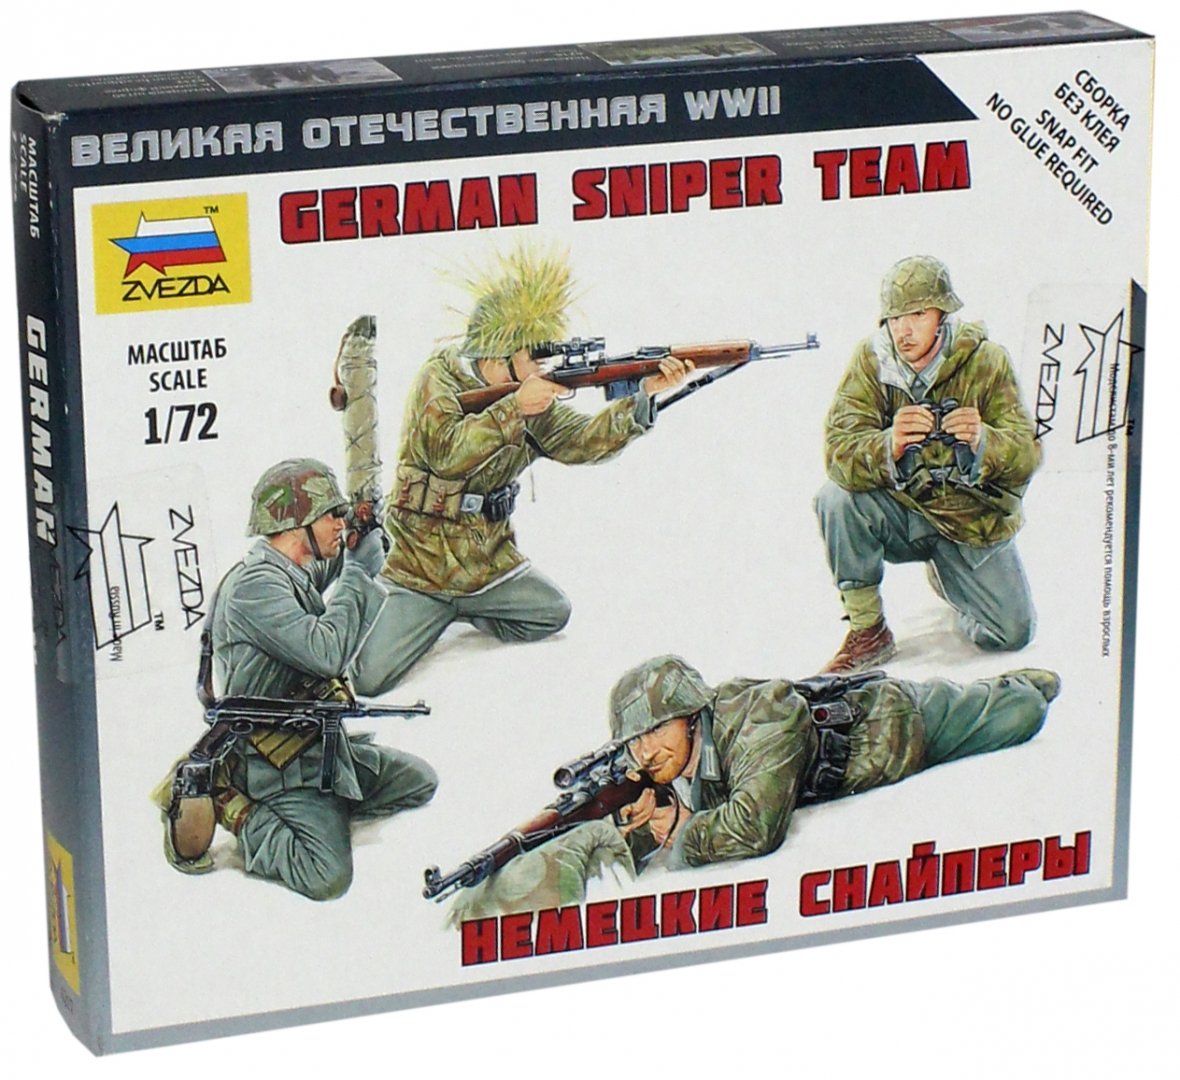 Иллюстрация 1 из 4 для Немецкие снайперы (6217) | Лабиринт - игрушки. Источник: Лабиринт